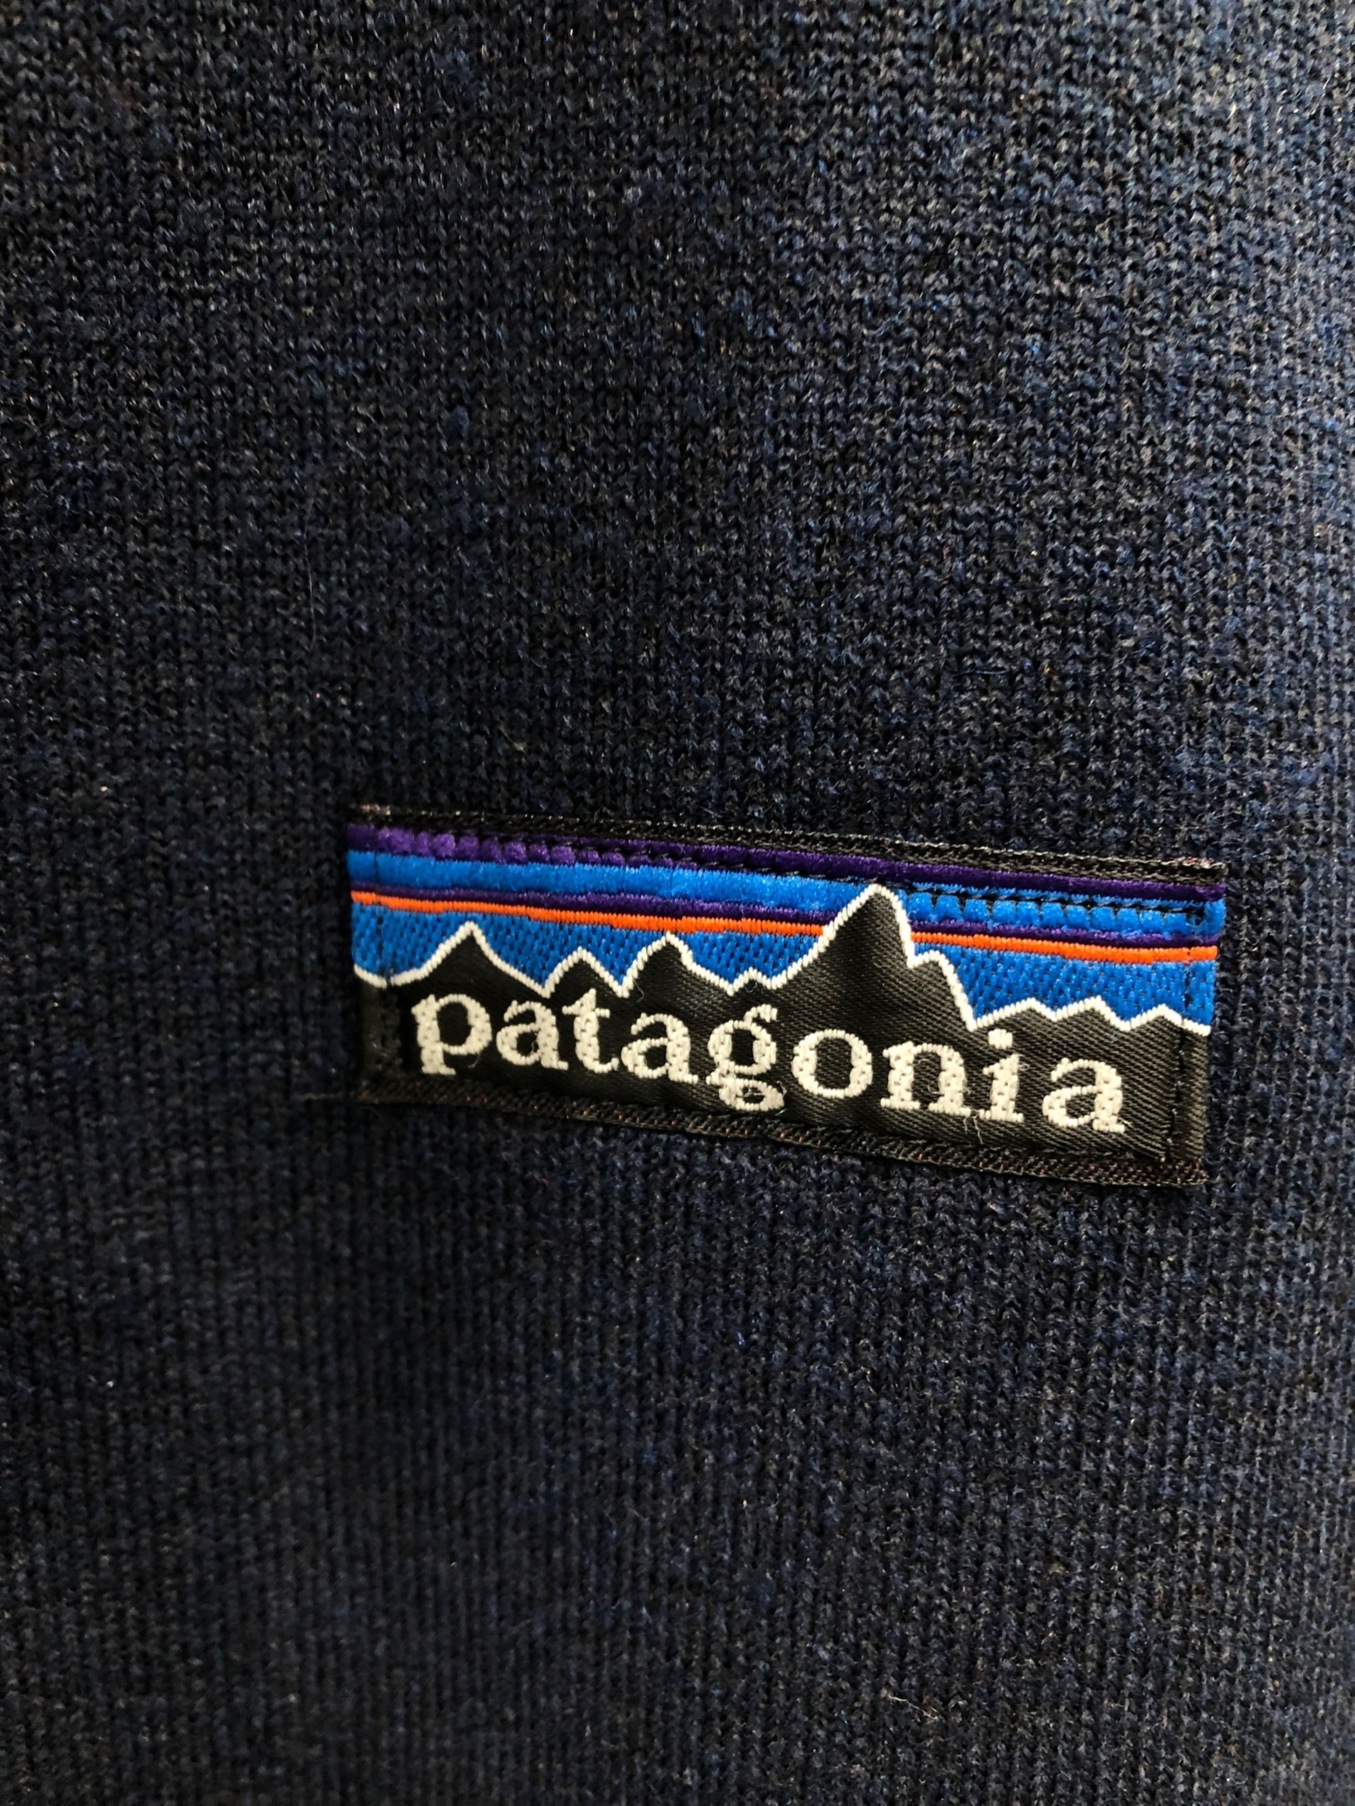 Patagonia (パタゴニア) ヴィンテージレトロパイルベスト ネイビー サイズ:L